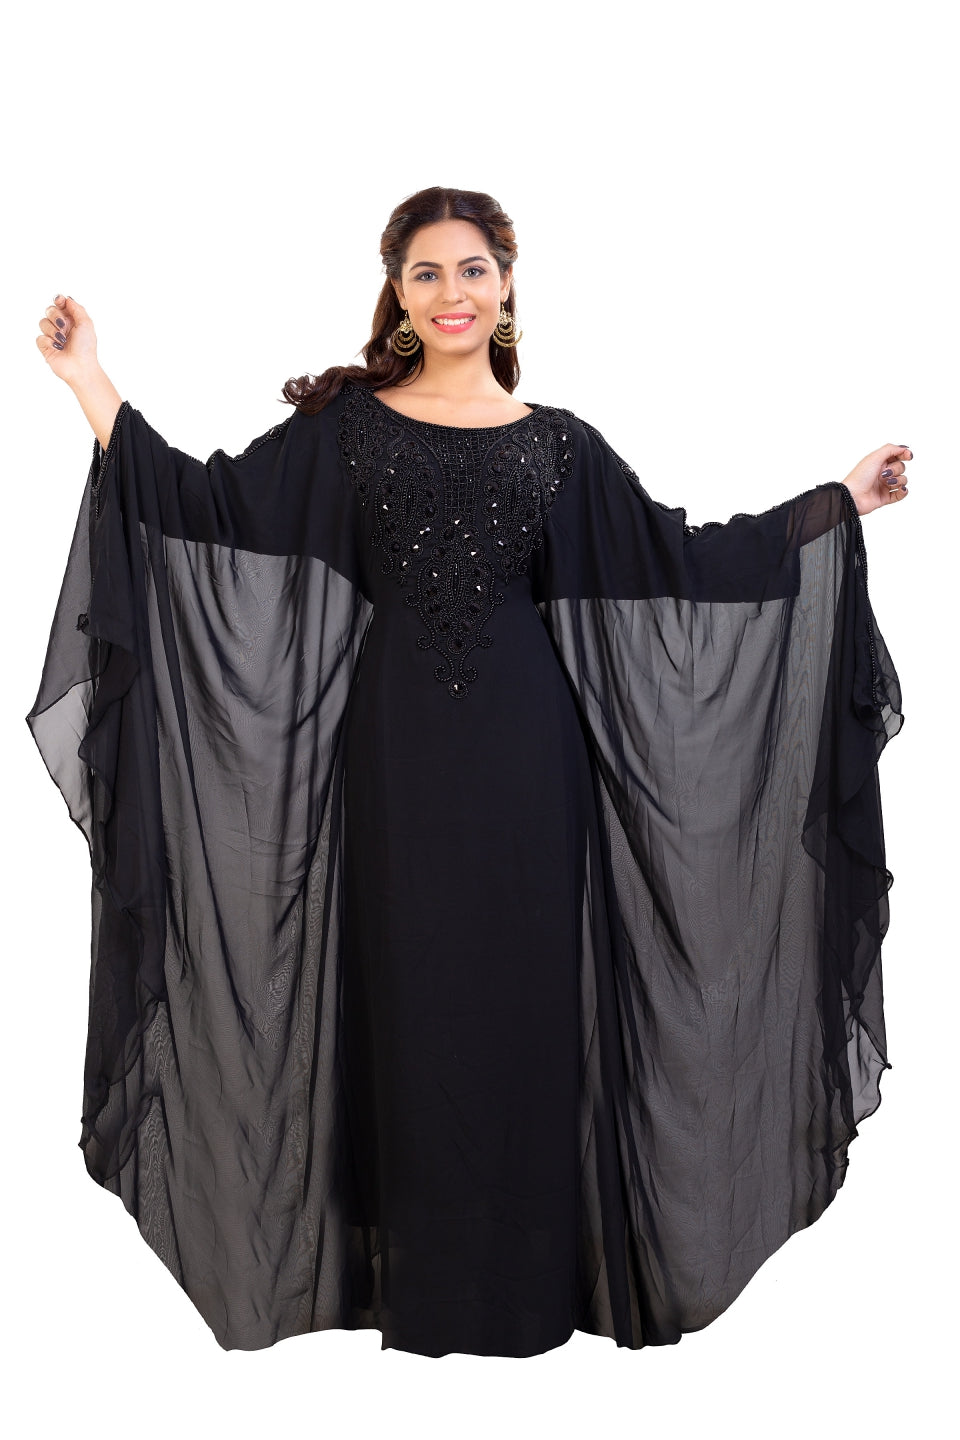 traditional abaya